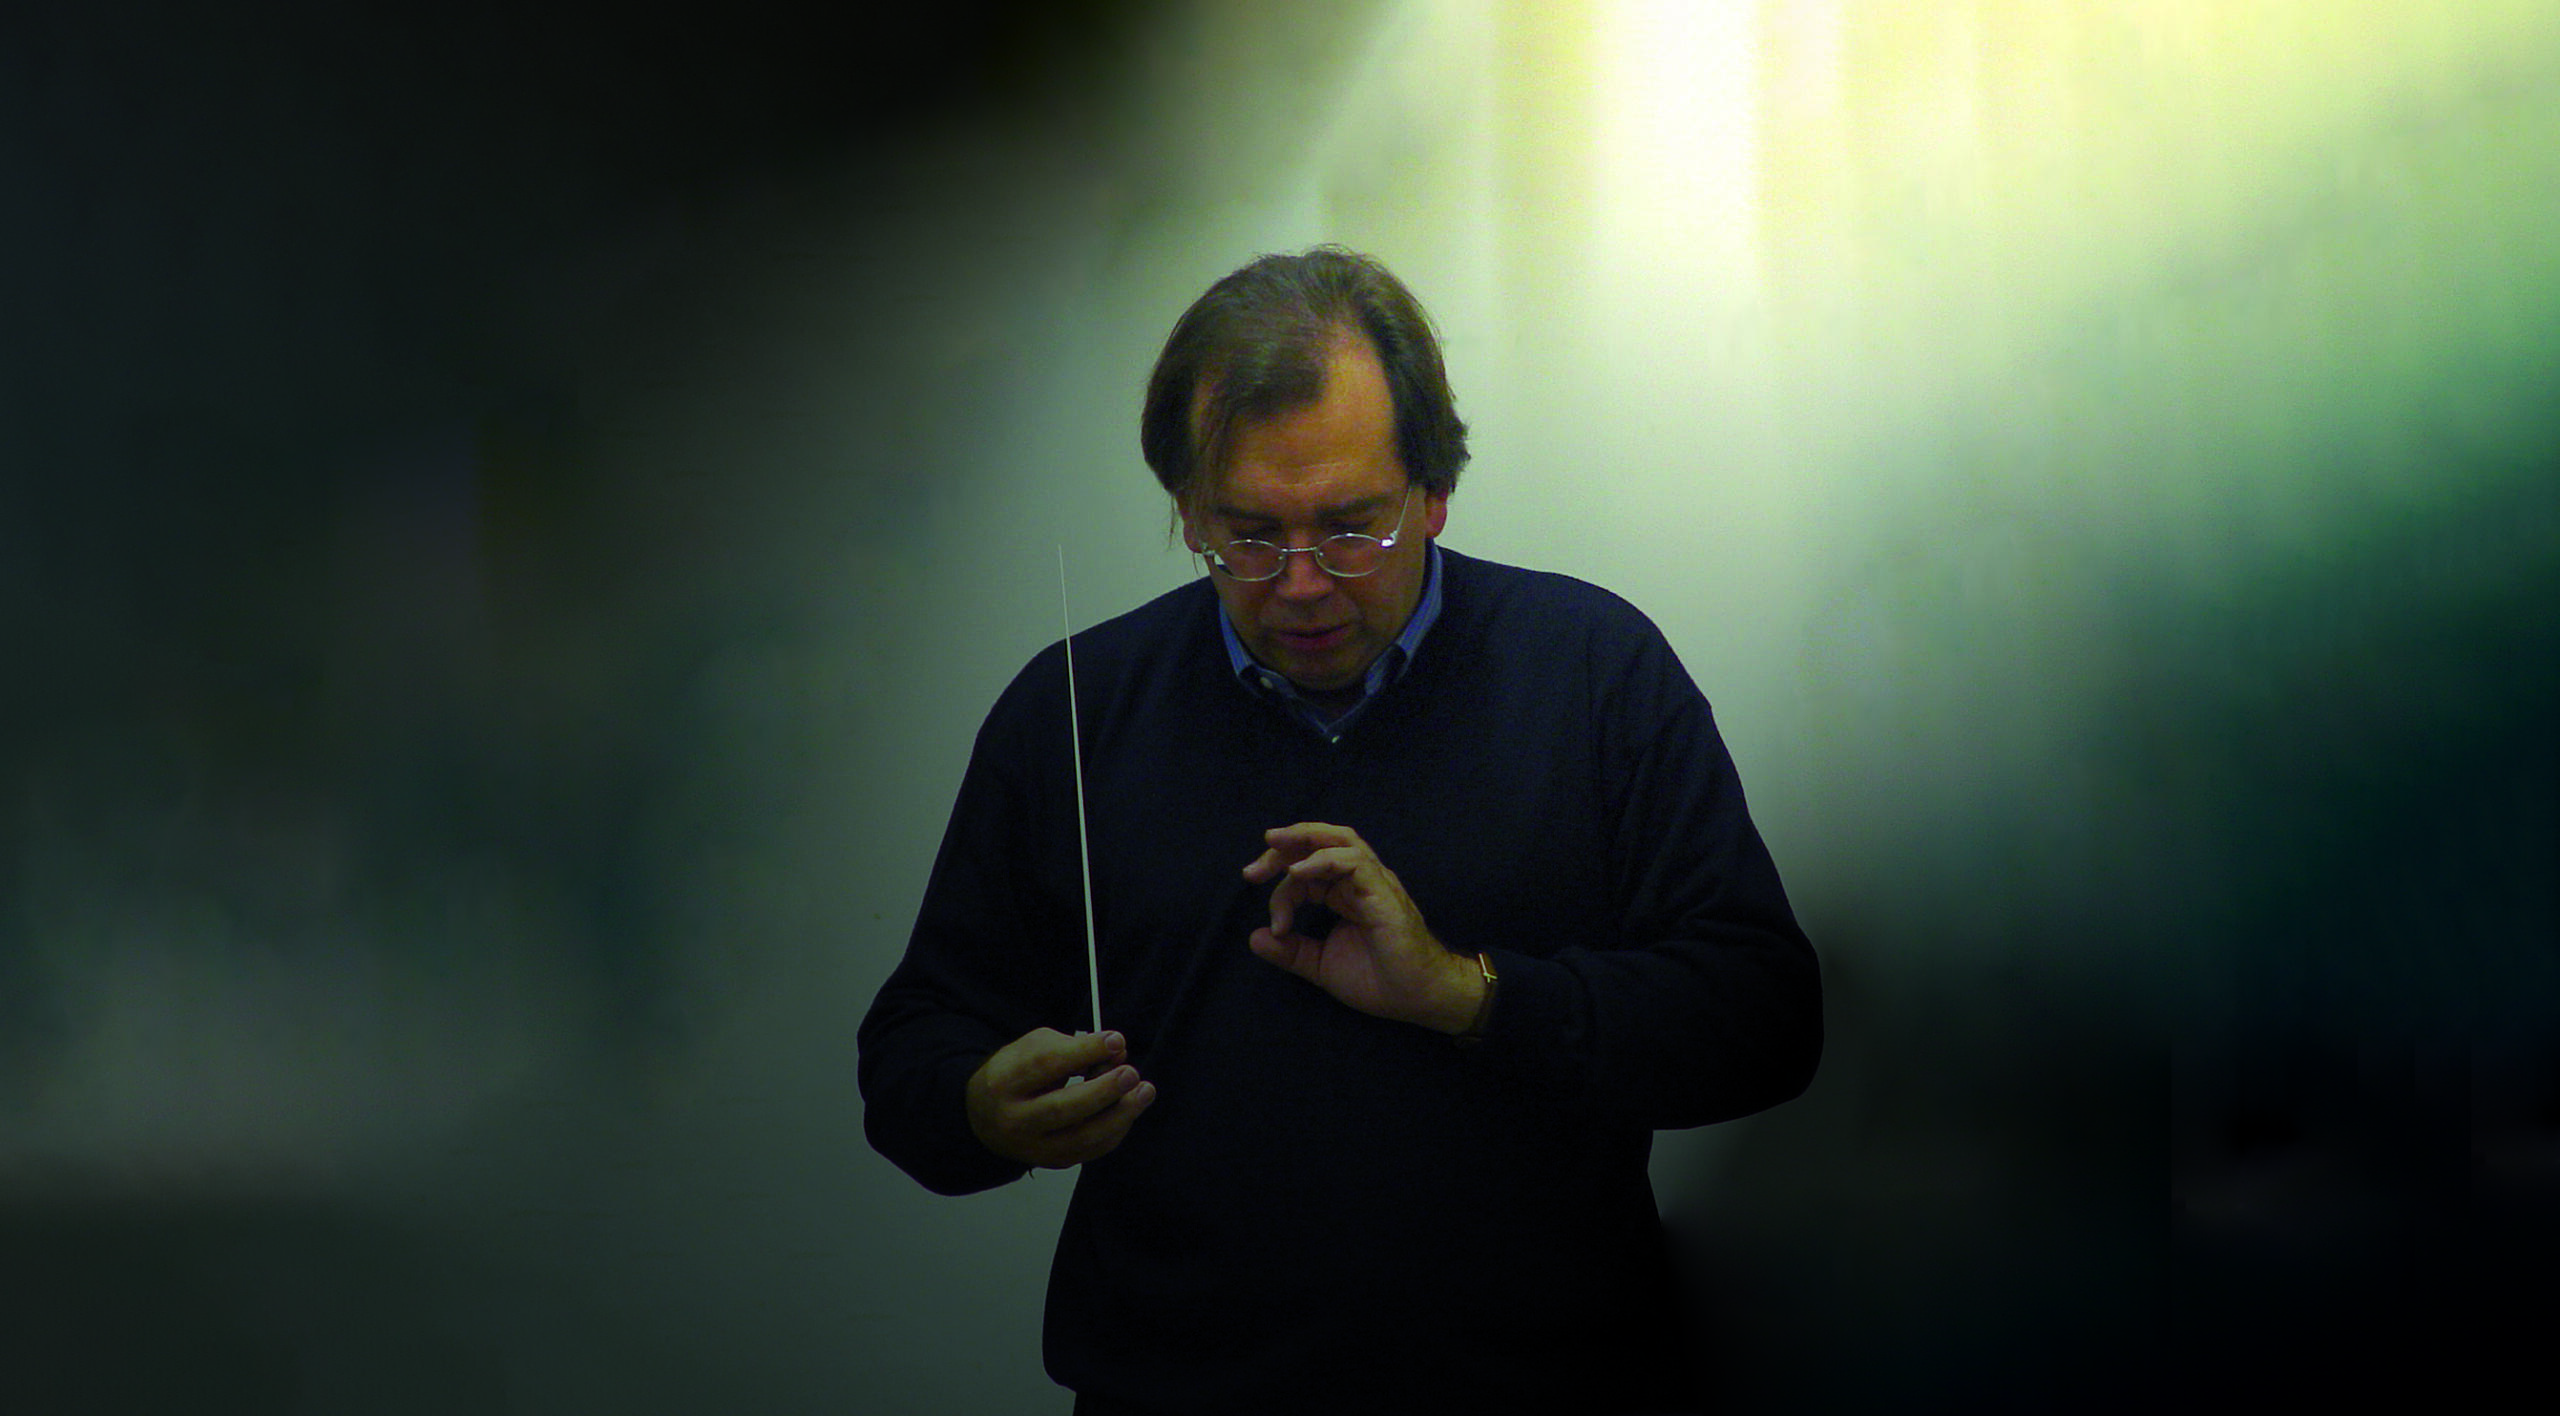 Porträt des Dirigenten Christian Kabitz. Er steht in einem lichtdurchfluteten Raum, hält einen Dirigentenstab in der Hand und ist ganz in sein Dirigat vertieft.